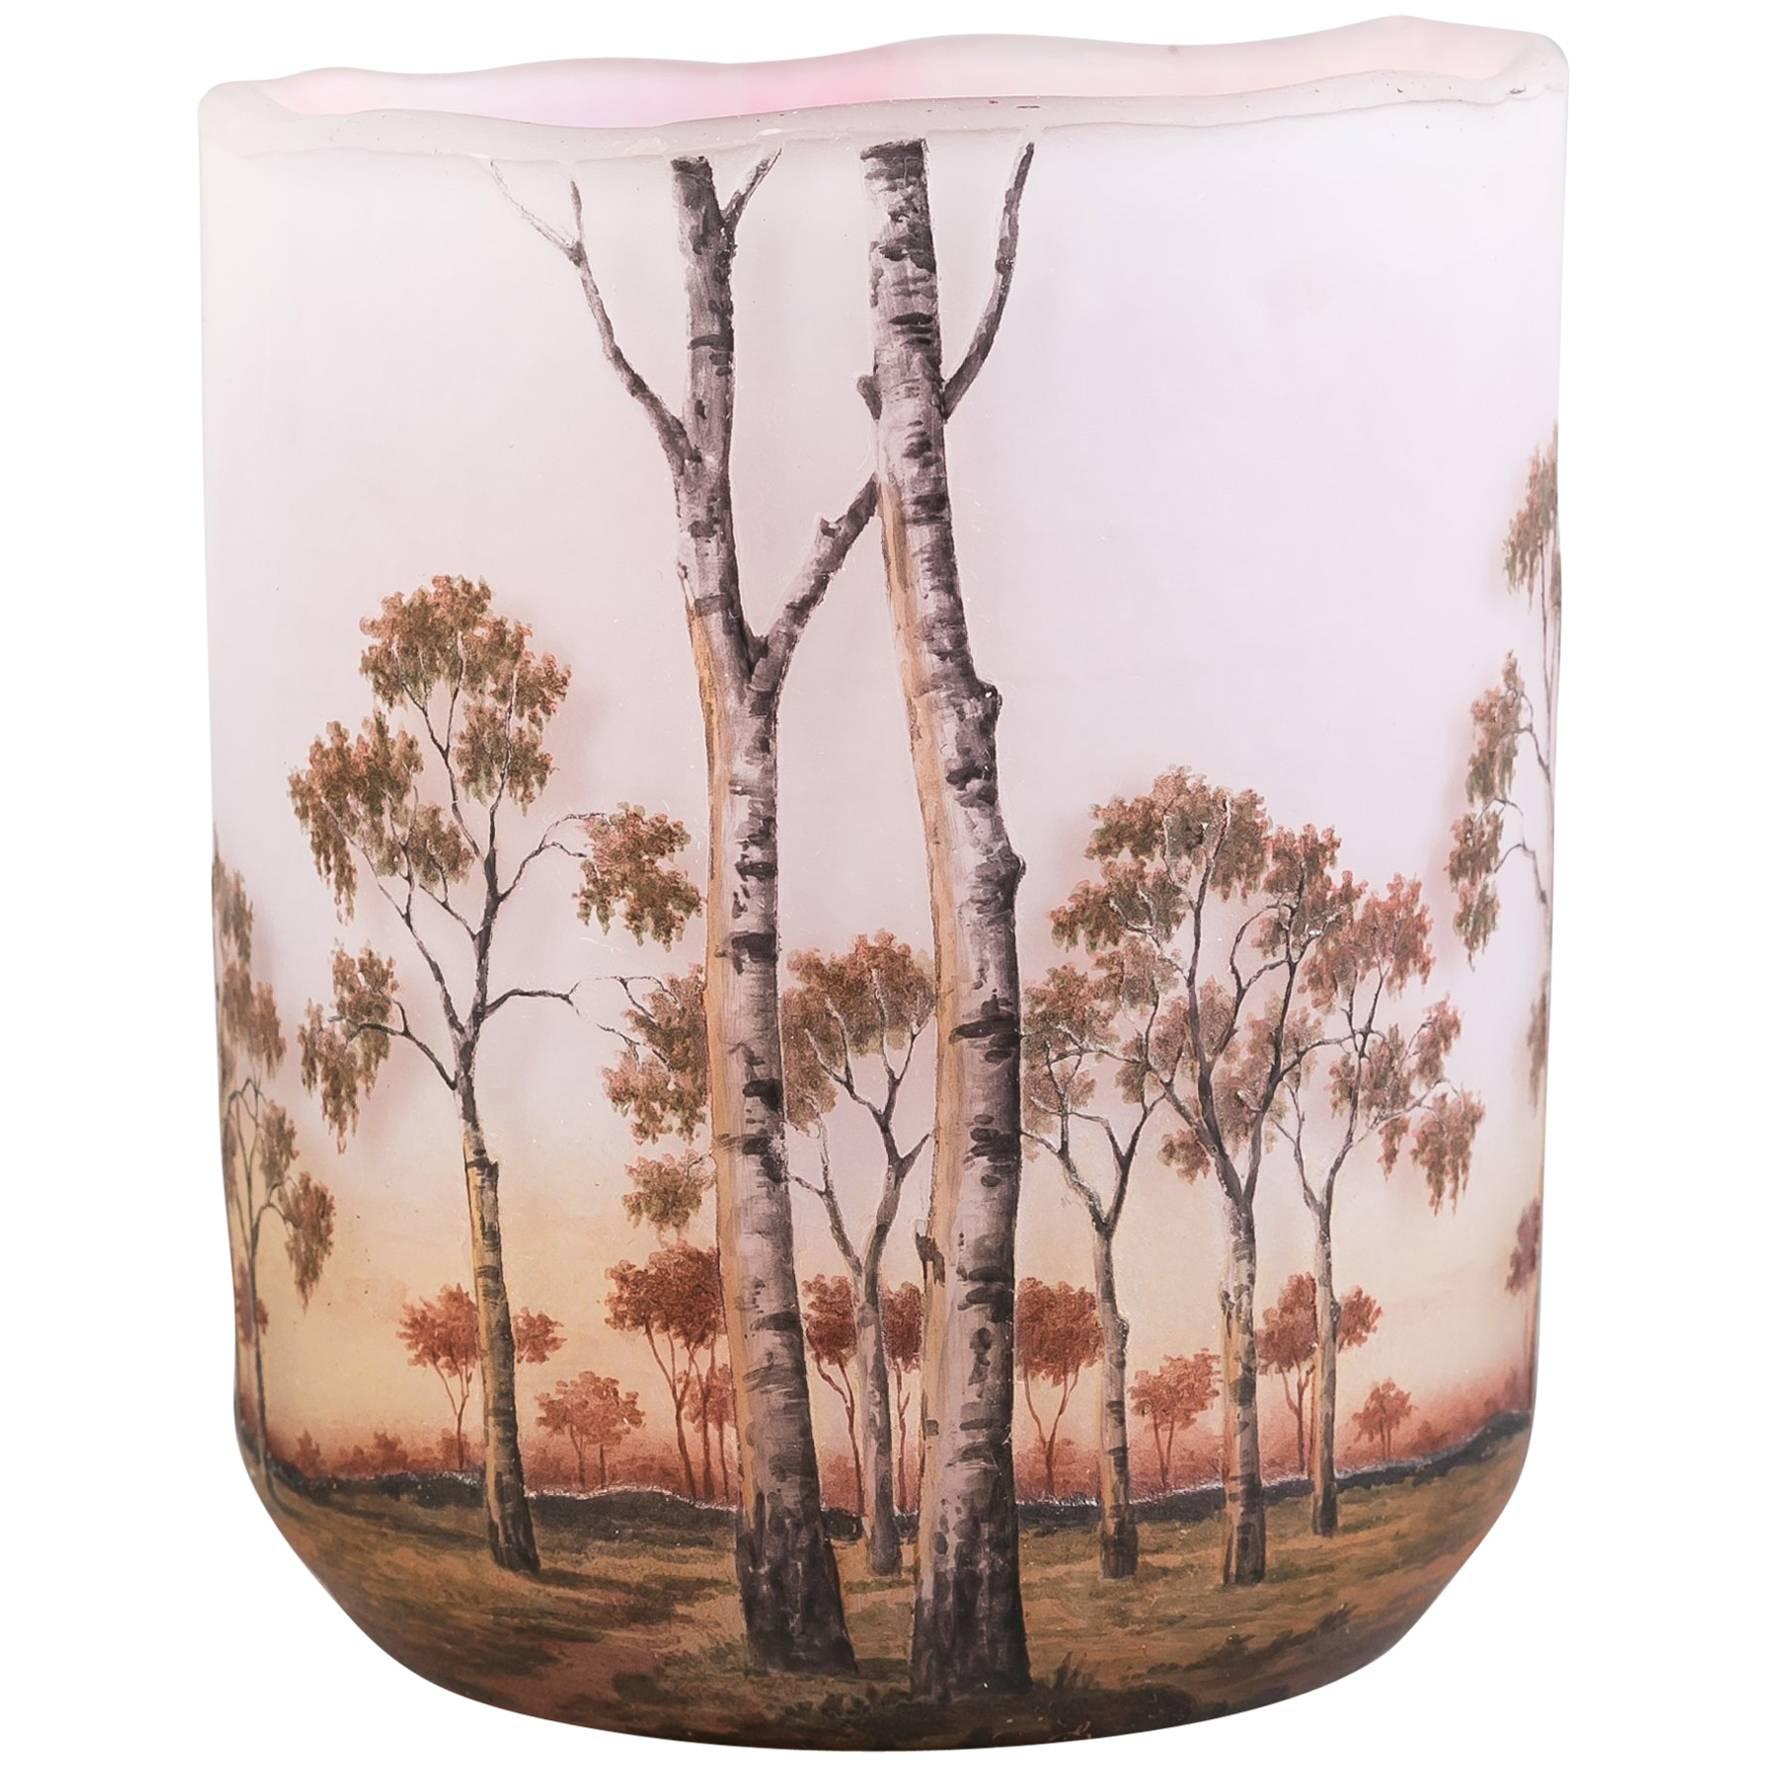 Vase de paysage Daum Nancy, datant d'environ 1910